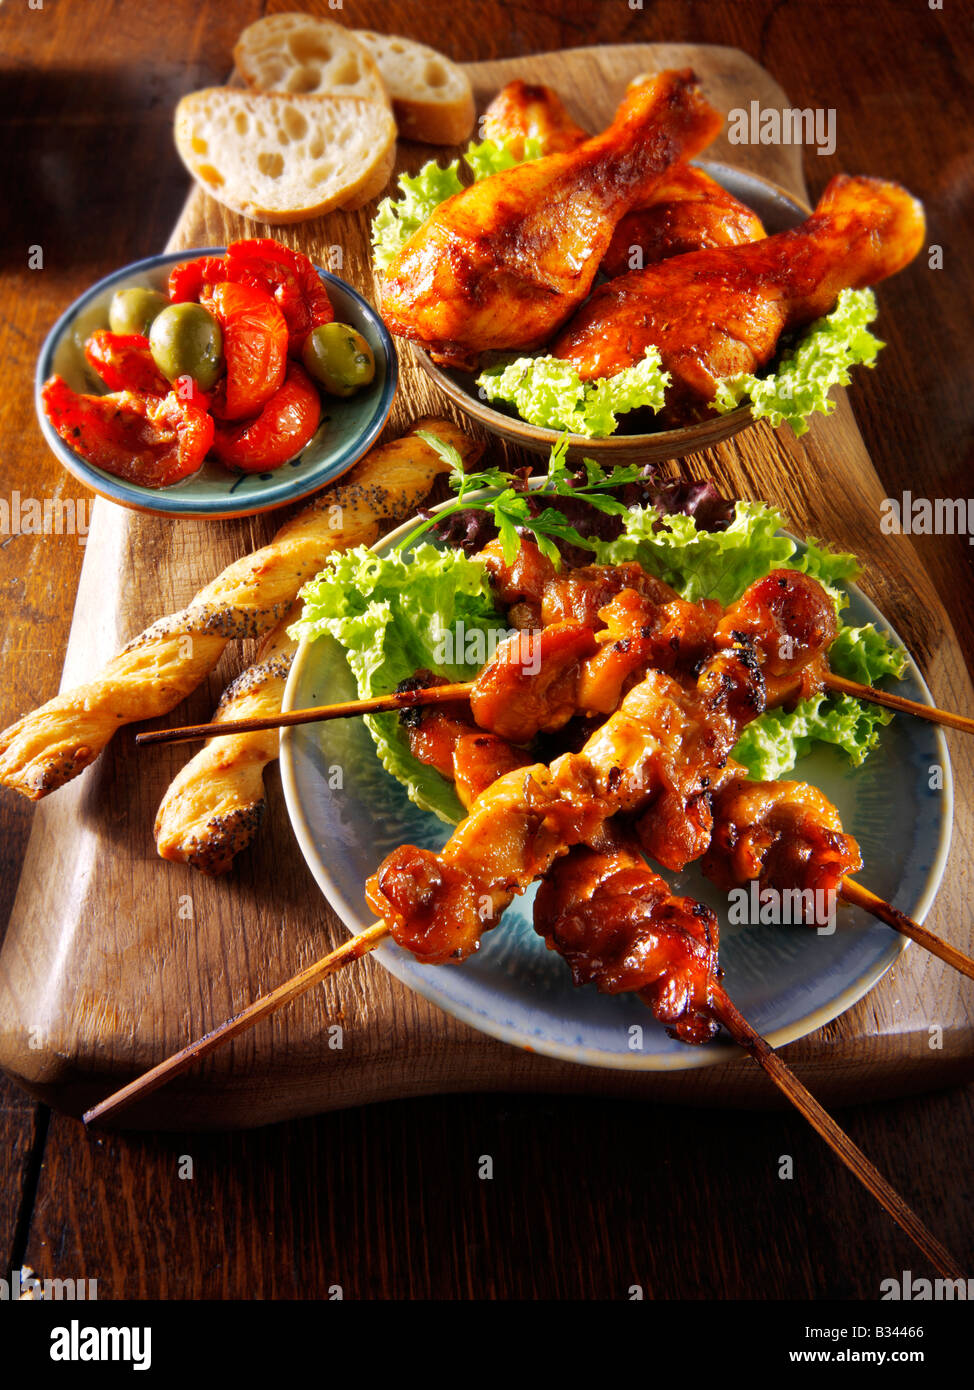 Cibo per barbecue - dalla parte anteriore - Yakitori di pollo, Marinaded tamburo di pollo bastoncini e sun blushed i pomodori. Foto Stock